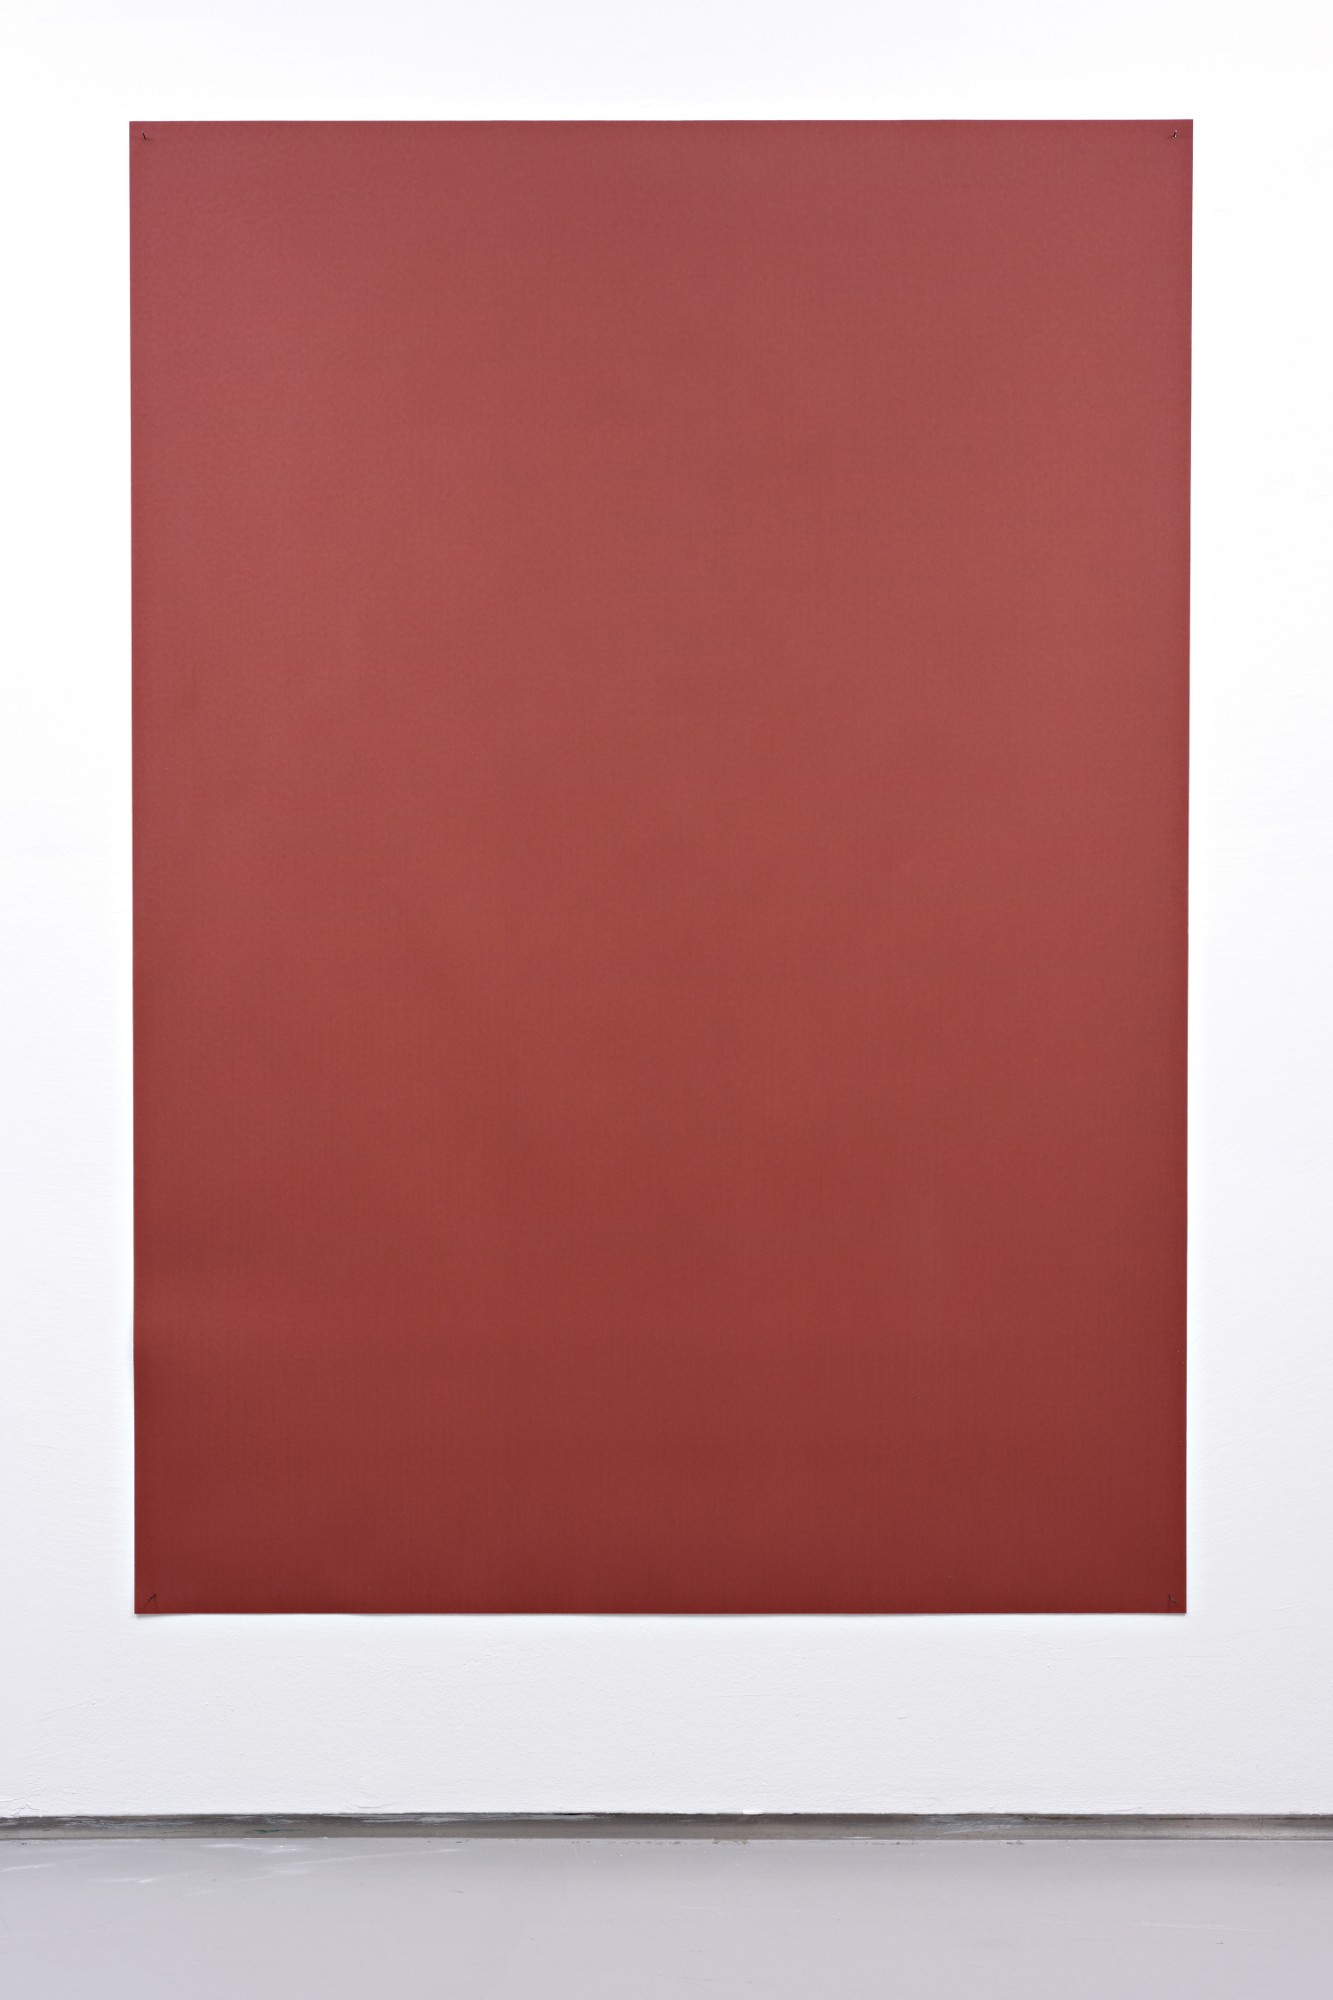 Tobias Hantmann, Pistill der Iris, rotbraun, sehr fein, sandpaper, 2011, 191 x 135 cm